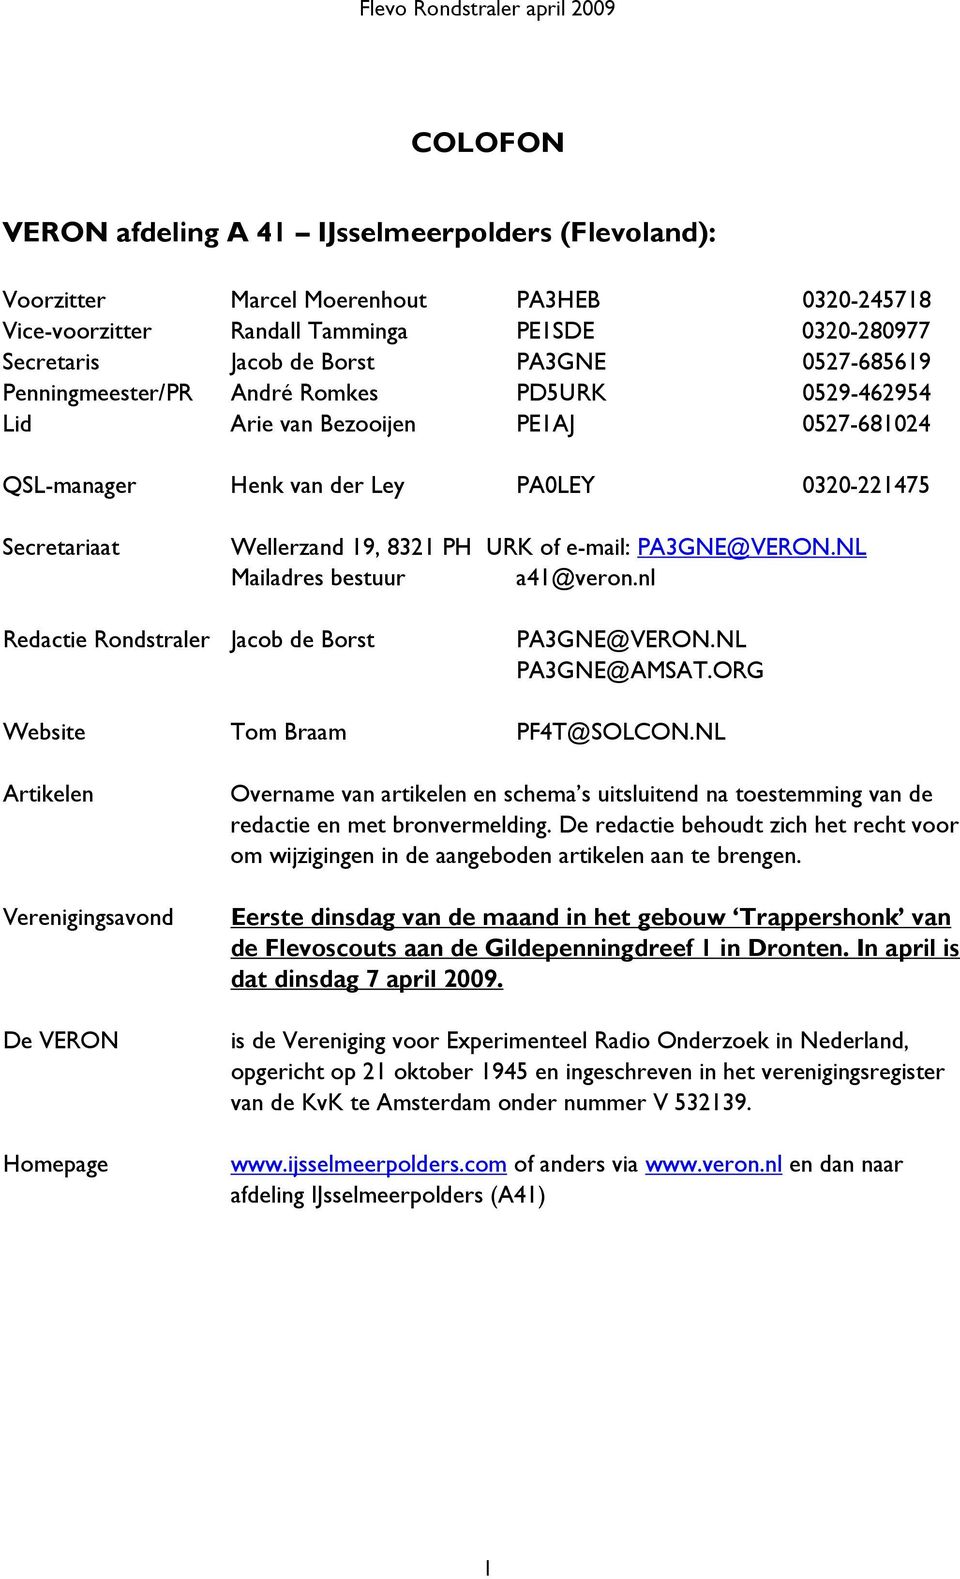 e-mail: PA3GNE@VERON.NL Mailadres bestuur a41@veron.nl Redactie Rondstraler Jacob de Borst PA3GNE@VERON.NL PA3GNE@AMSAT.ORG Website Tom Braam PF4T@SOLCON.